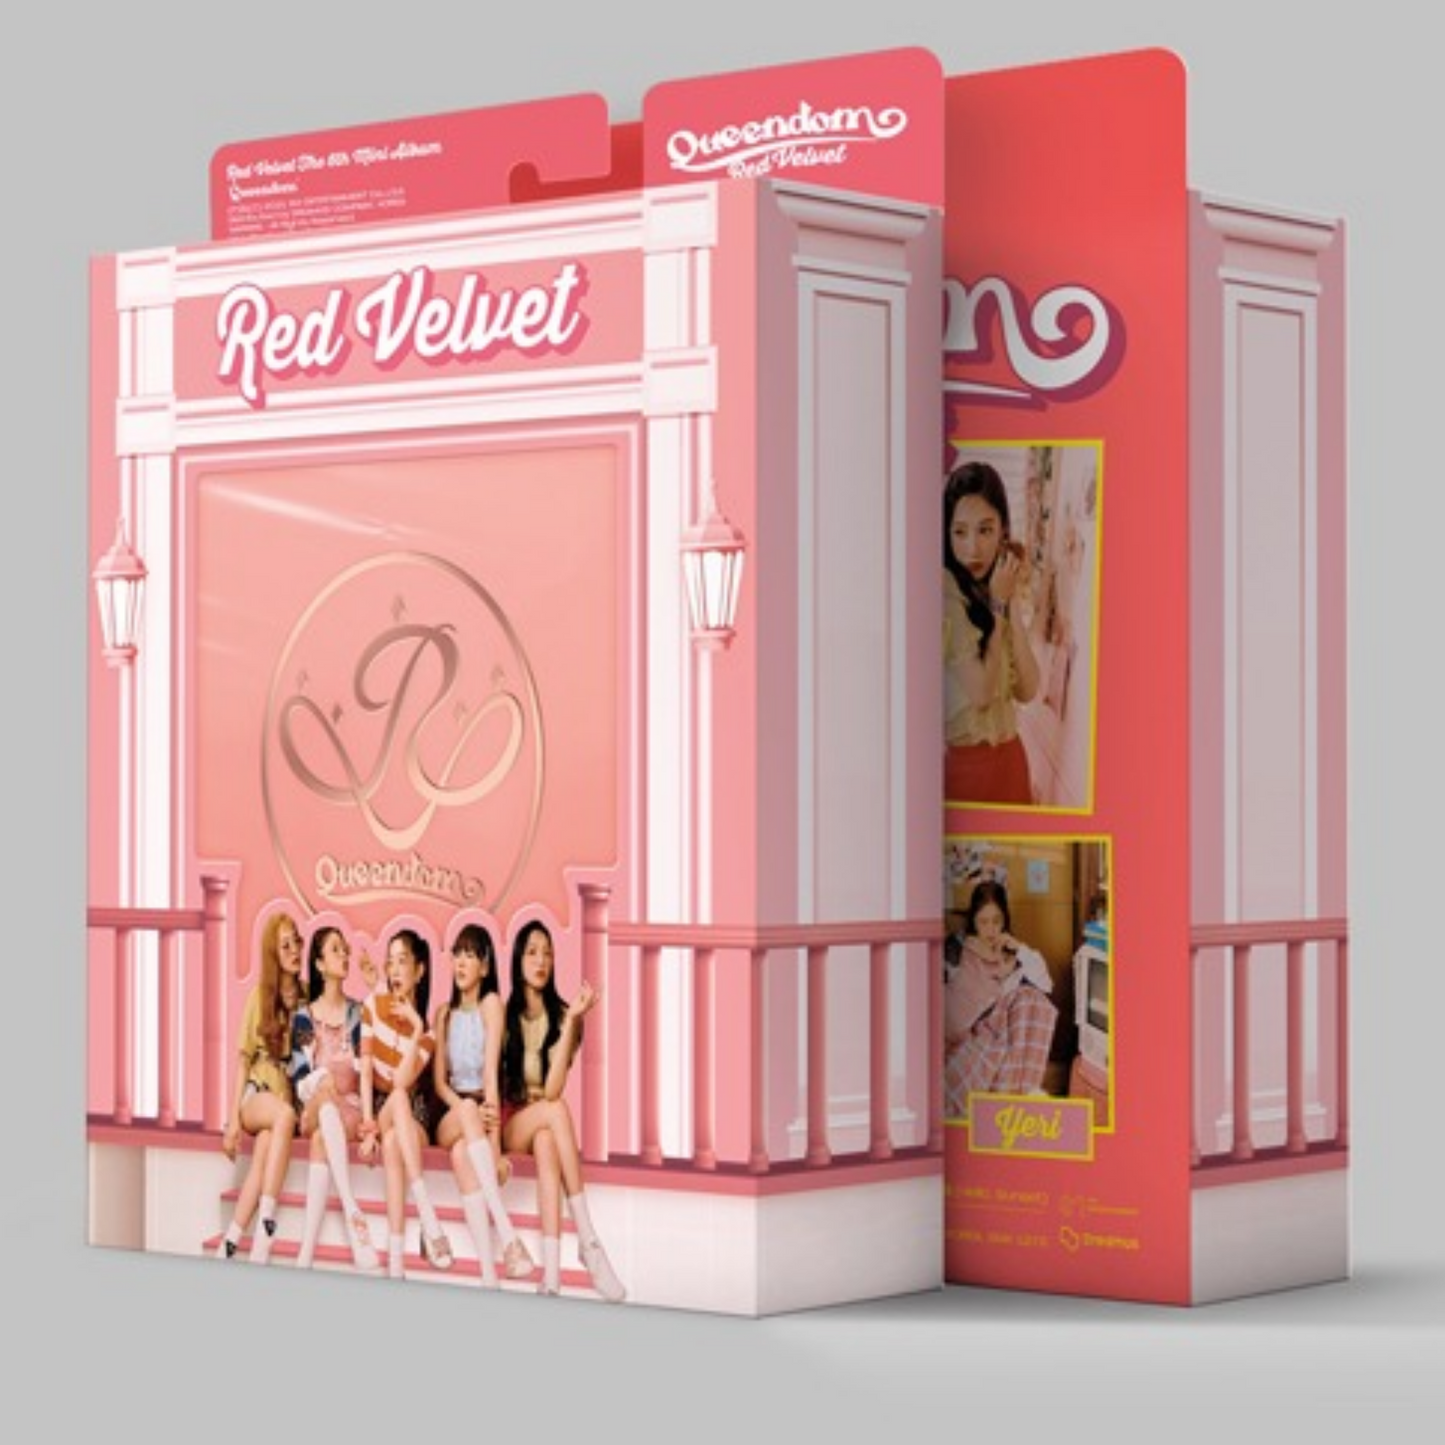 فيليت الاحمر _ الالبوم السادس : كويندم  | (ONE)  Red Velvet  - The 6th Mini Album : Queendom(Girls Ver.)